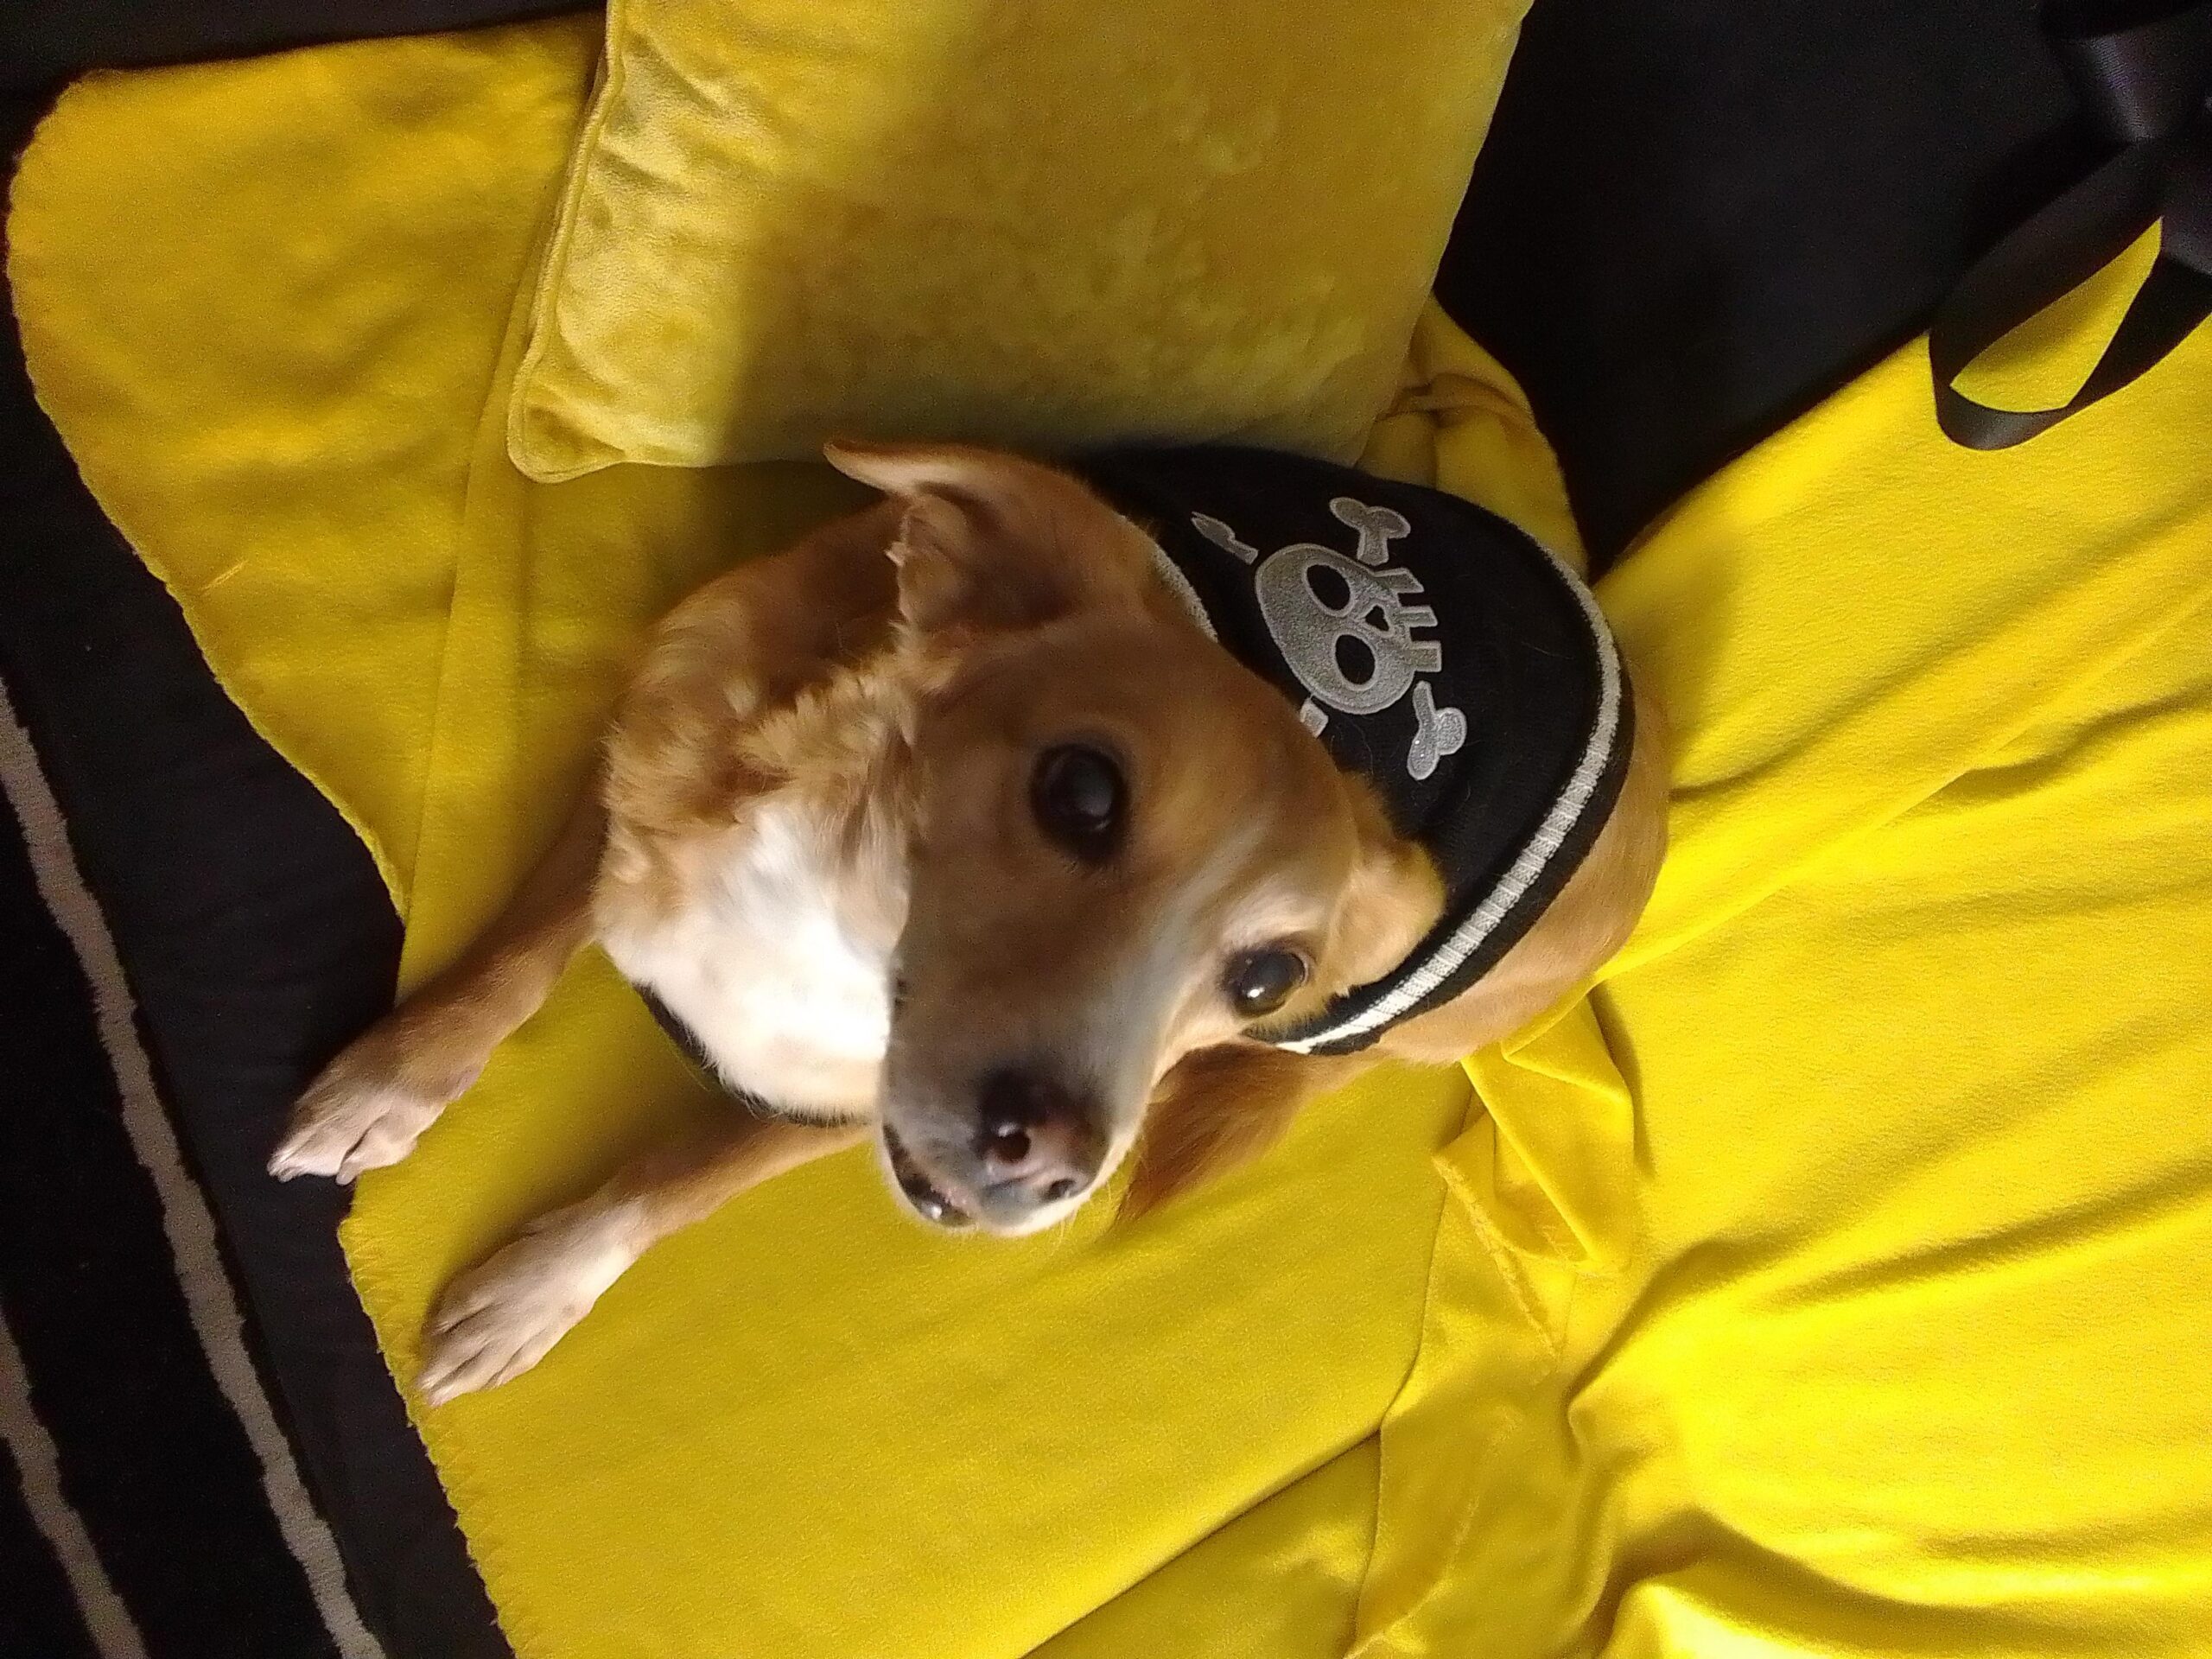 Leeloo the Romanian Pirate-Dog